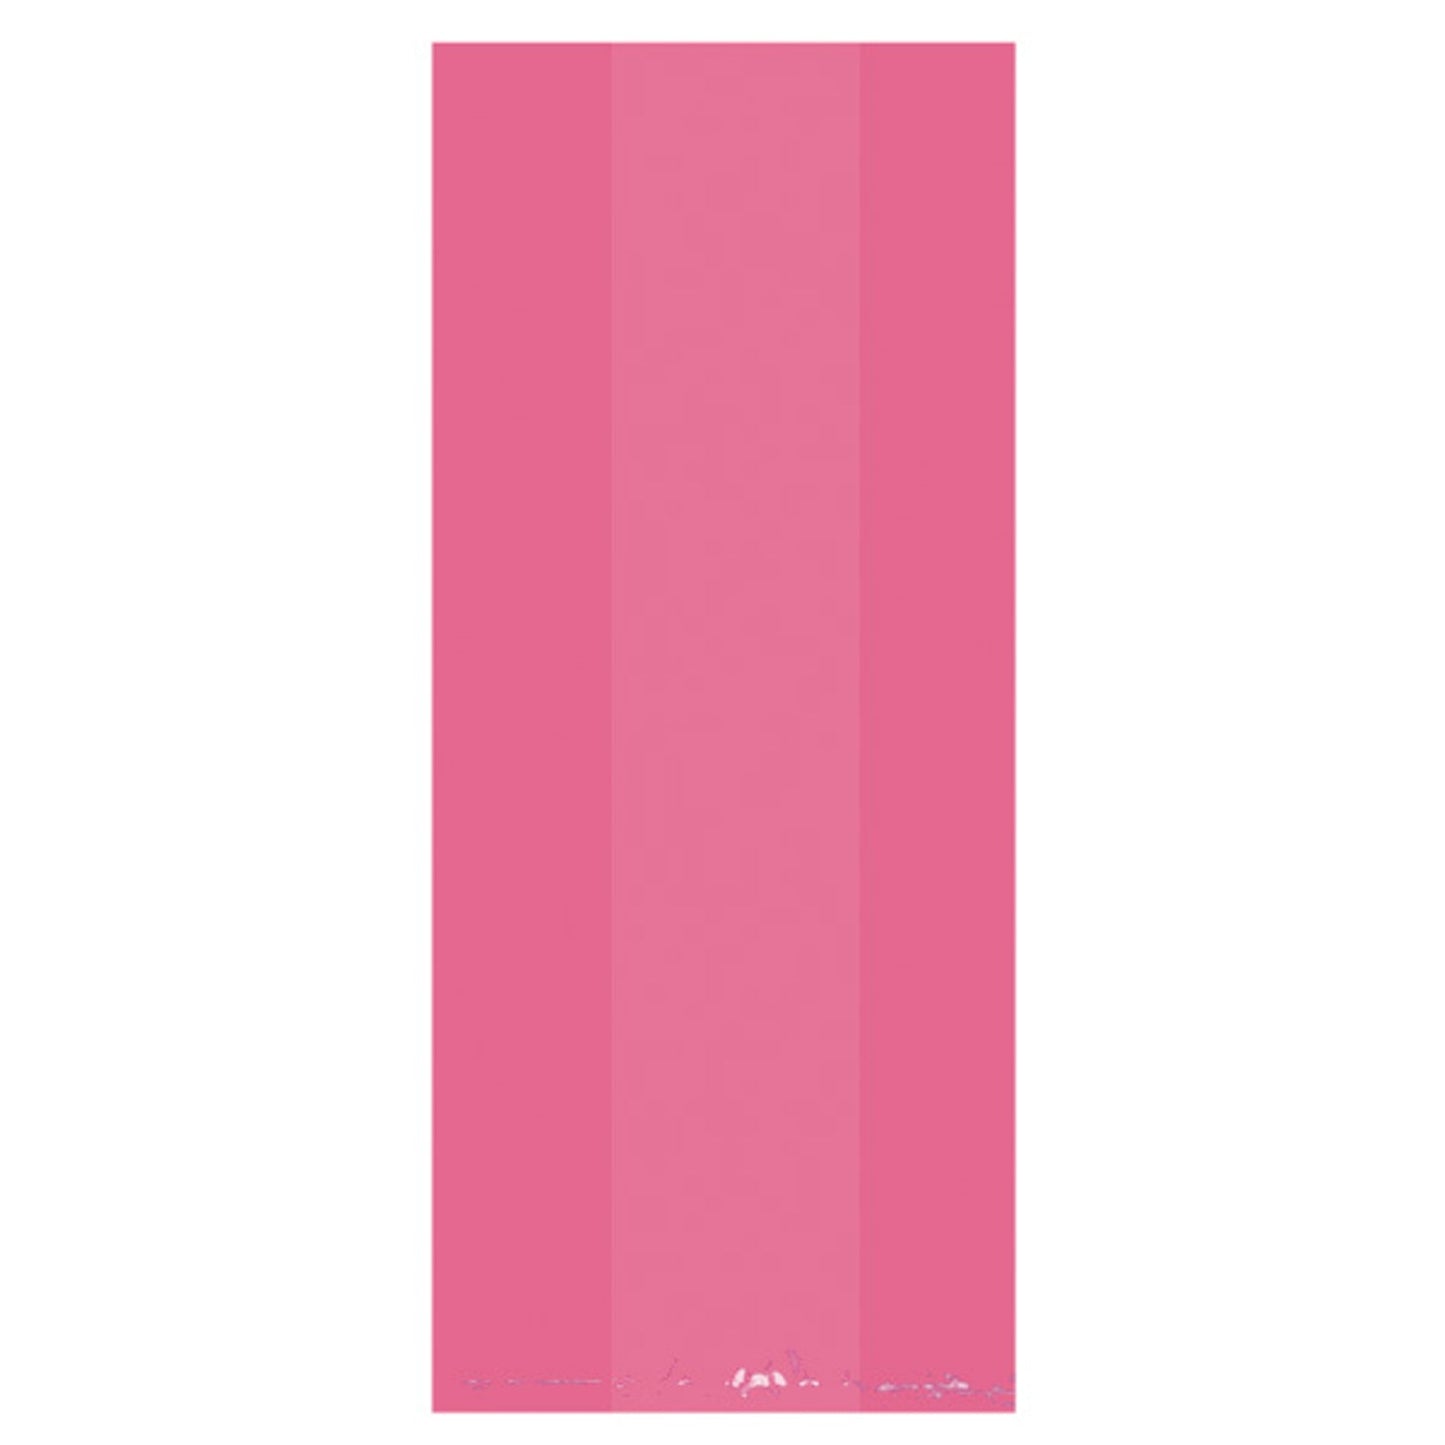 Large Bright Pink Plastic Party Bags, 29cm x 12.5cm x 9cm.